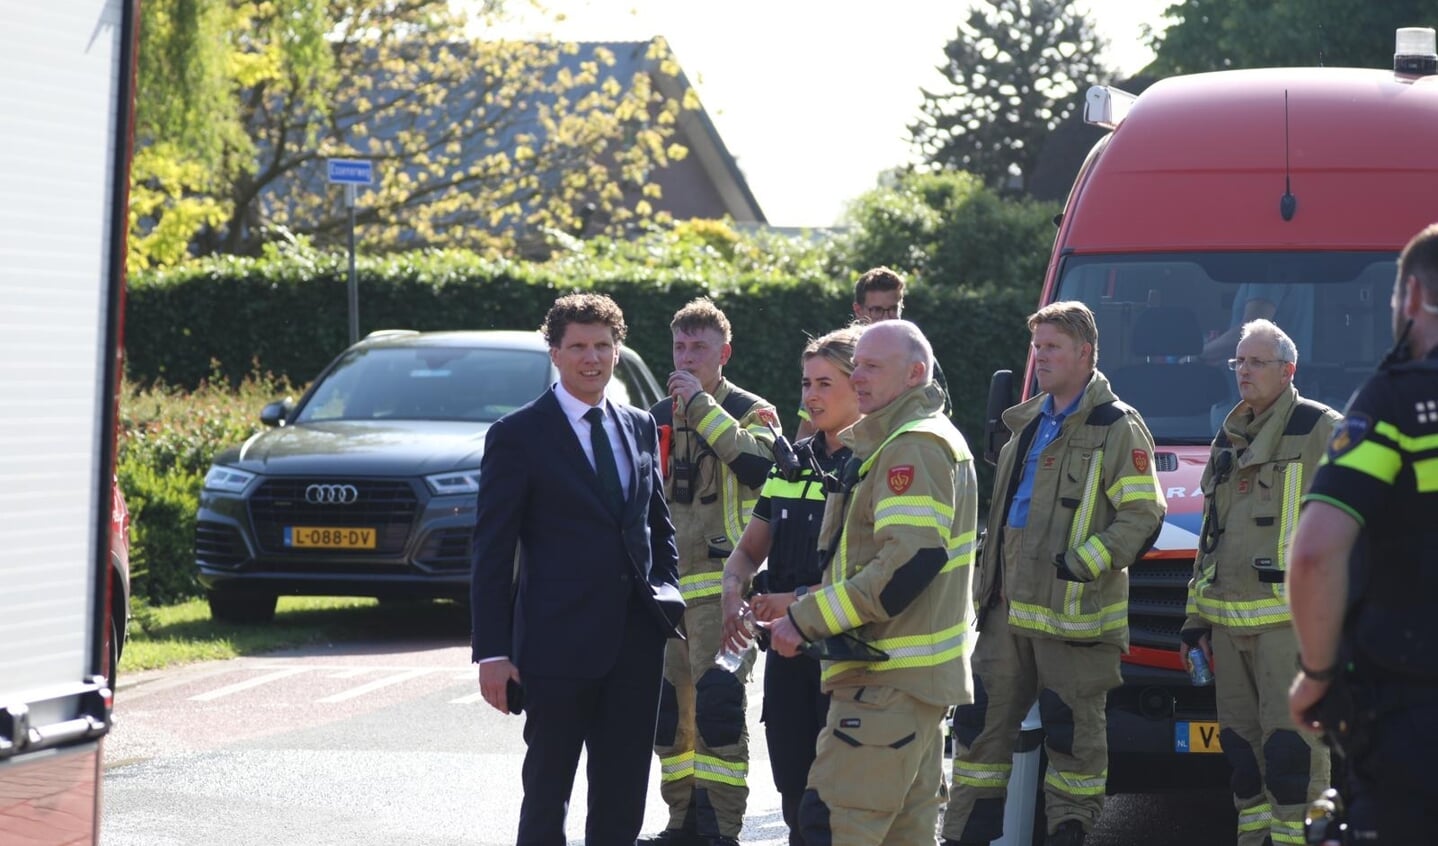 Burgemeester Jacco van der Tak in gesprek met hulpverleners.